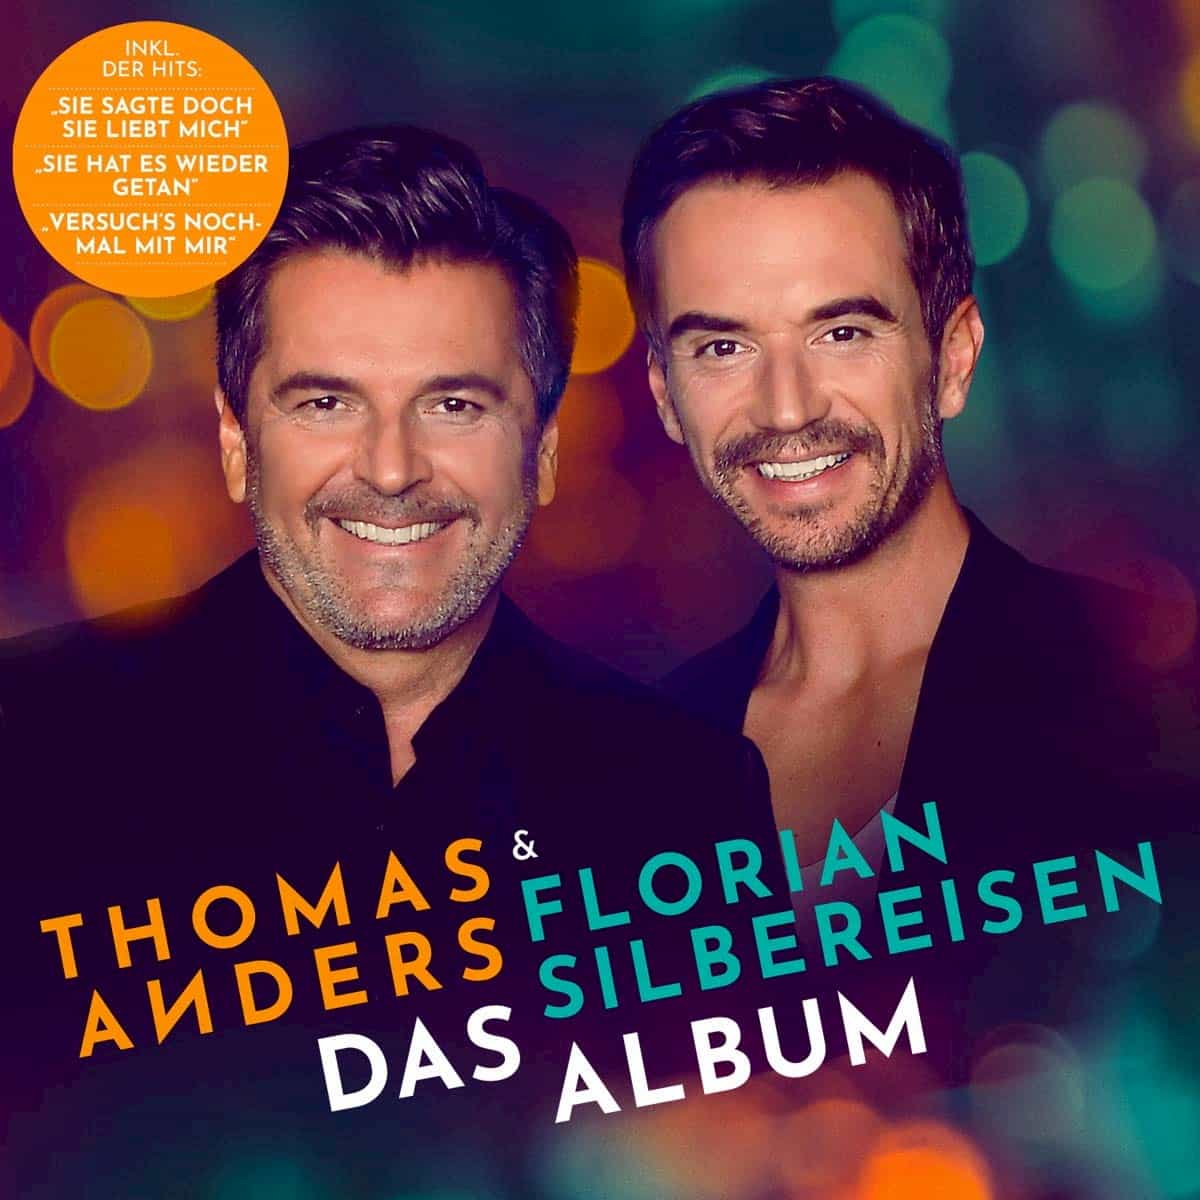 Thomas Anders & Florian Silbereisen CD Das Album 2020 veröffentlicht